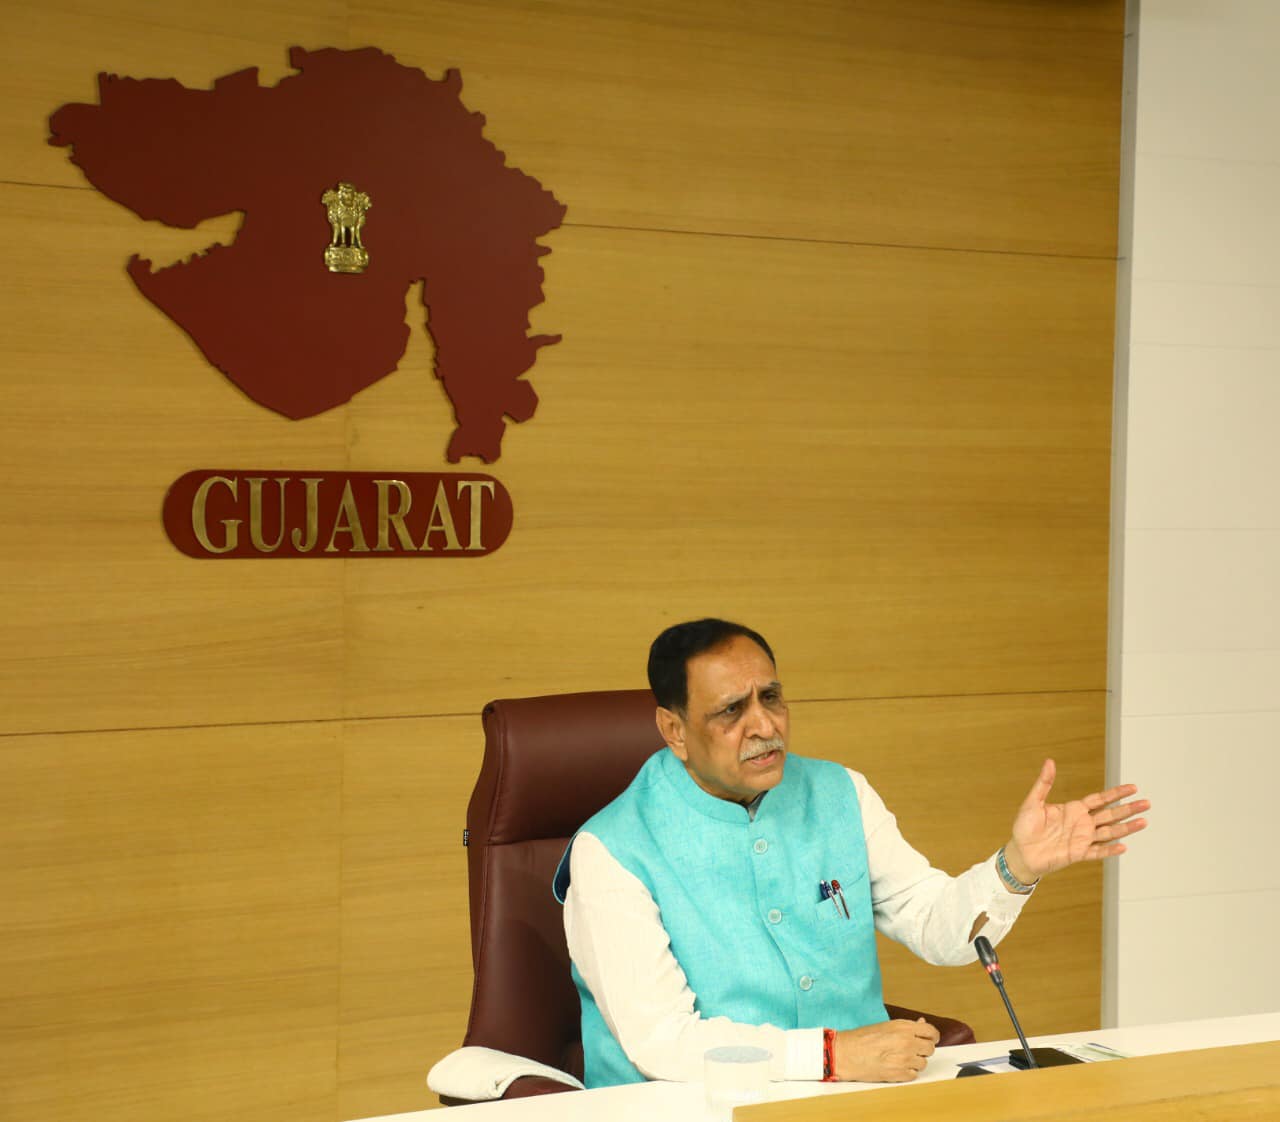 ગુજરાત: સીએમ રૂપાણીએ ફાયર NOCને લઈને મહત્વનો નિર્ણય લીધો, જાણો શું છે નવા નિયમ